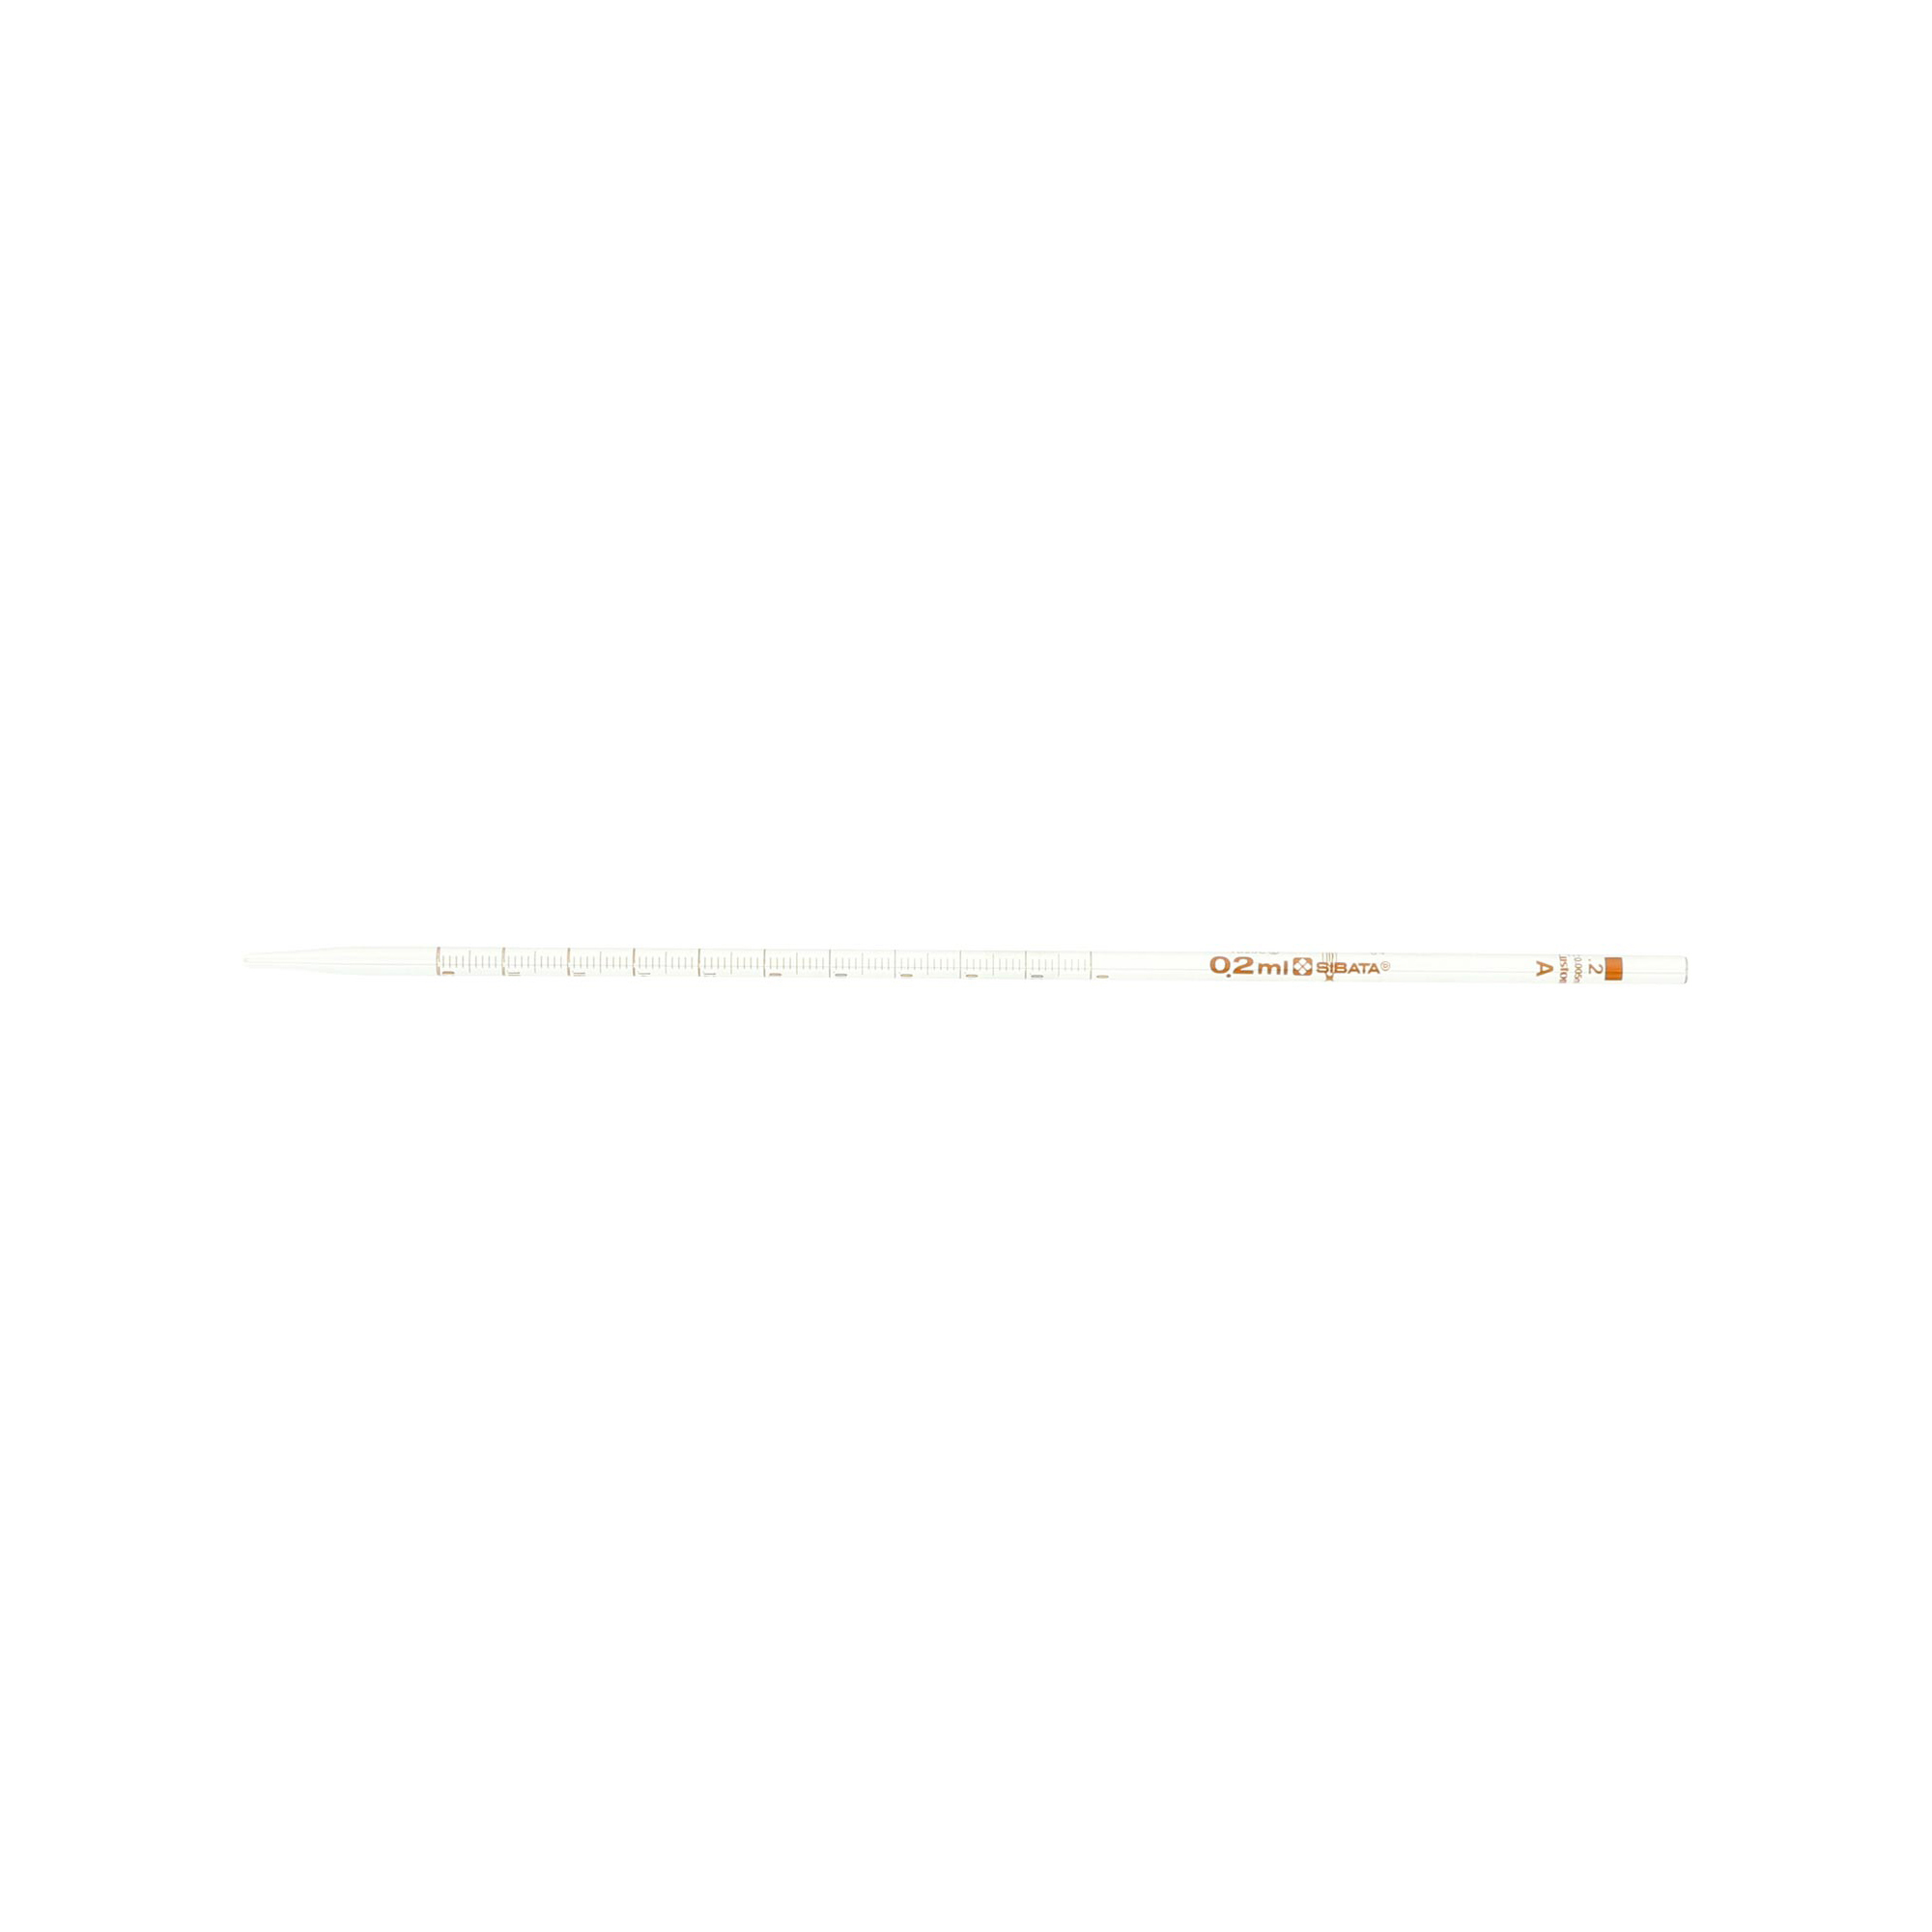 021040-02A メスピペット 中間目盛 カスタムA 0.2mL(10本) 柴田科学(SIBATA) 印刷